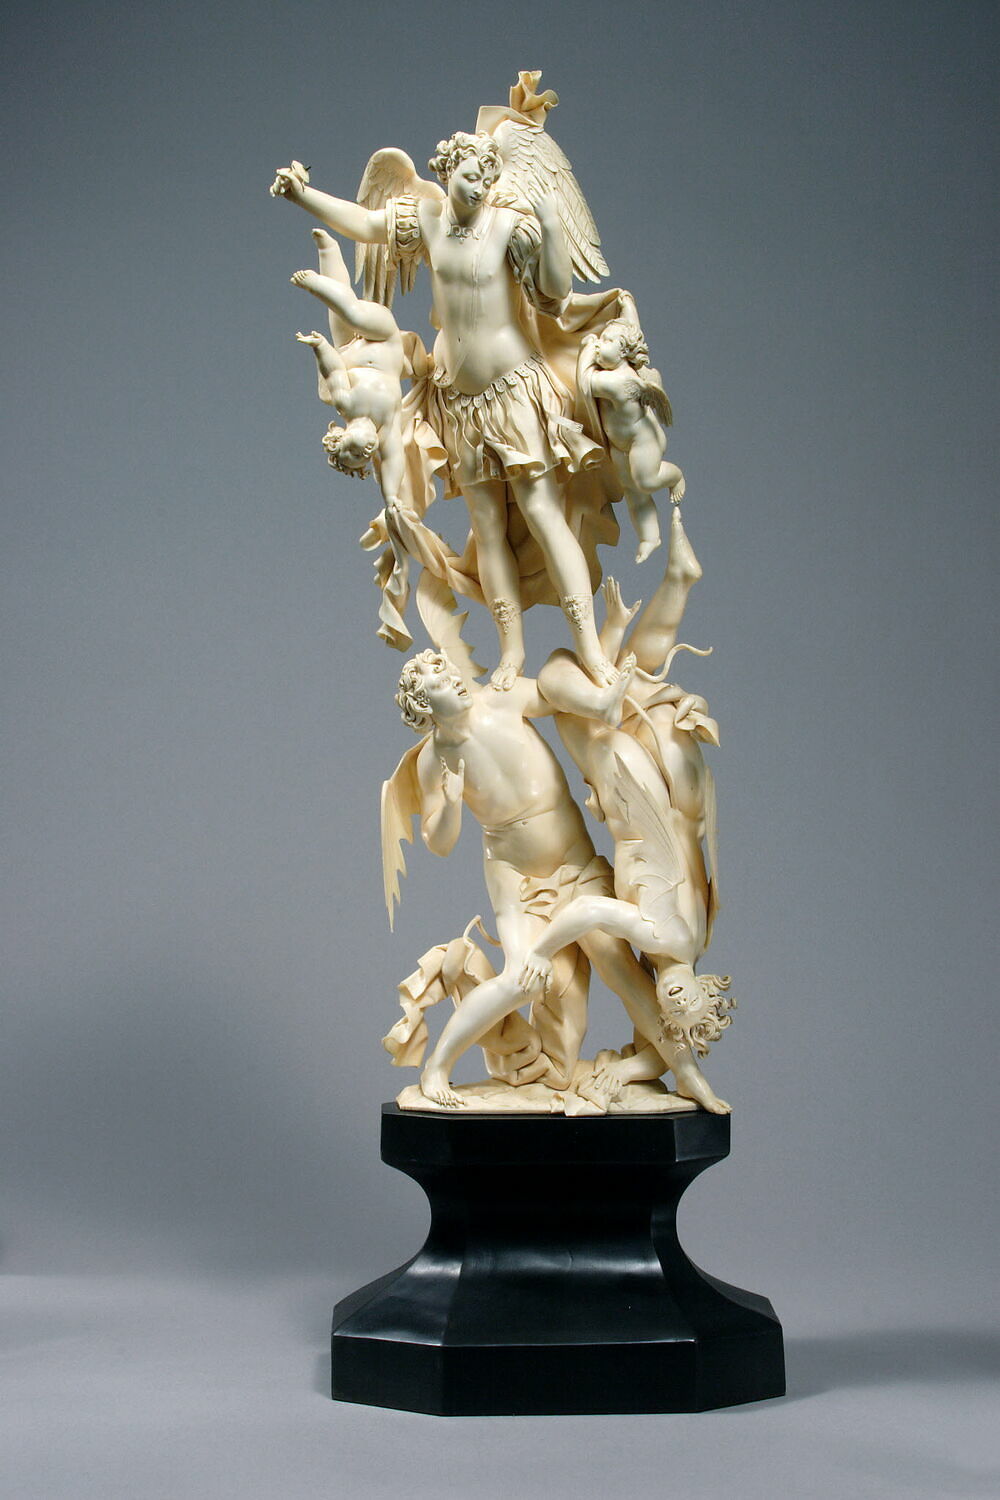  Exposition : Venus d'ailleurs, matériaux et objets voyageurs. La Petite Galerie du musée du Louvre 00002312